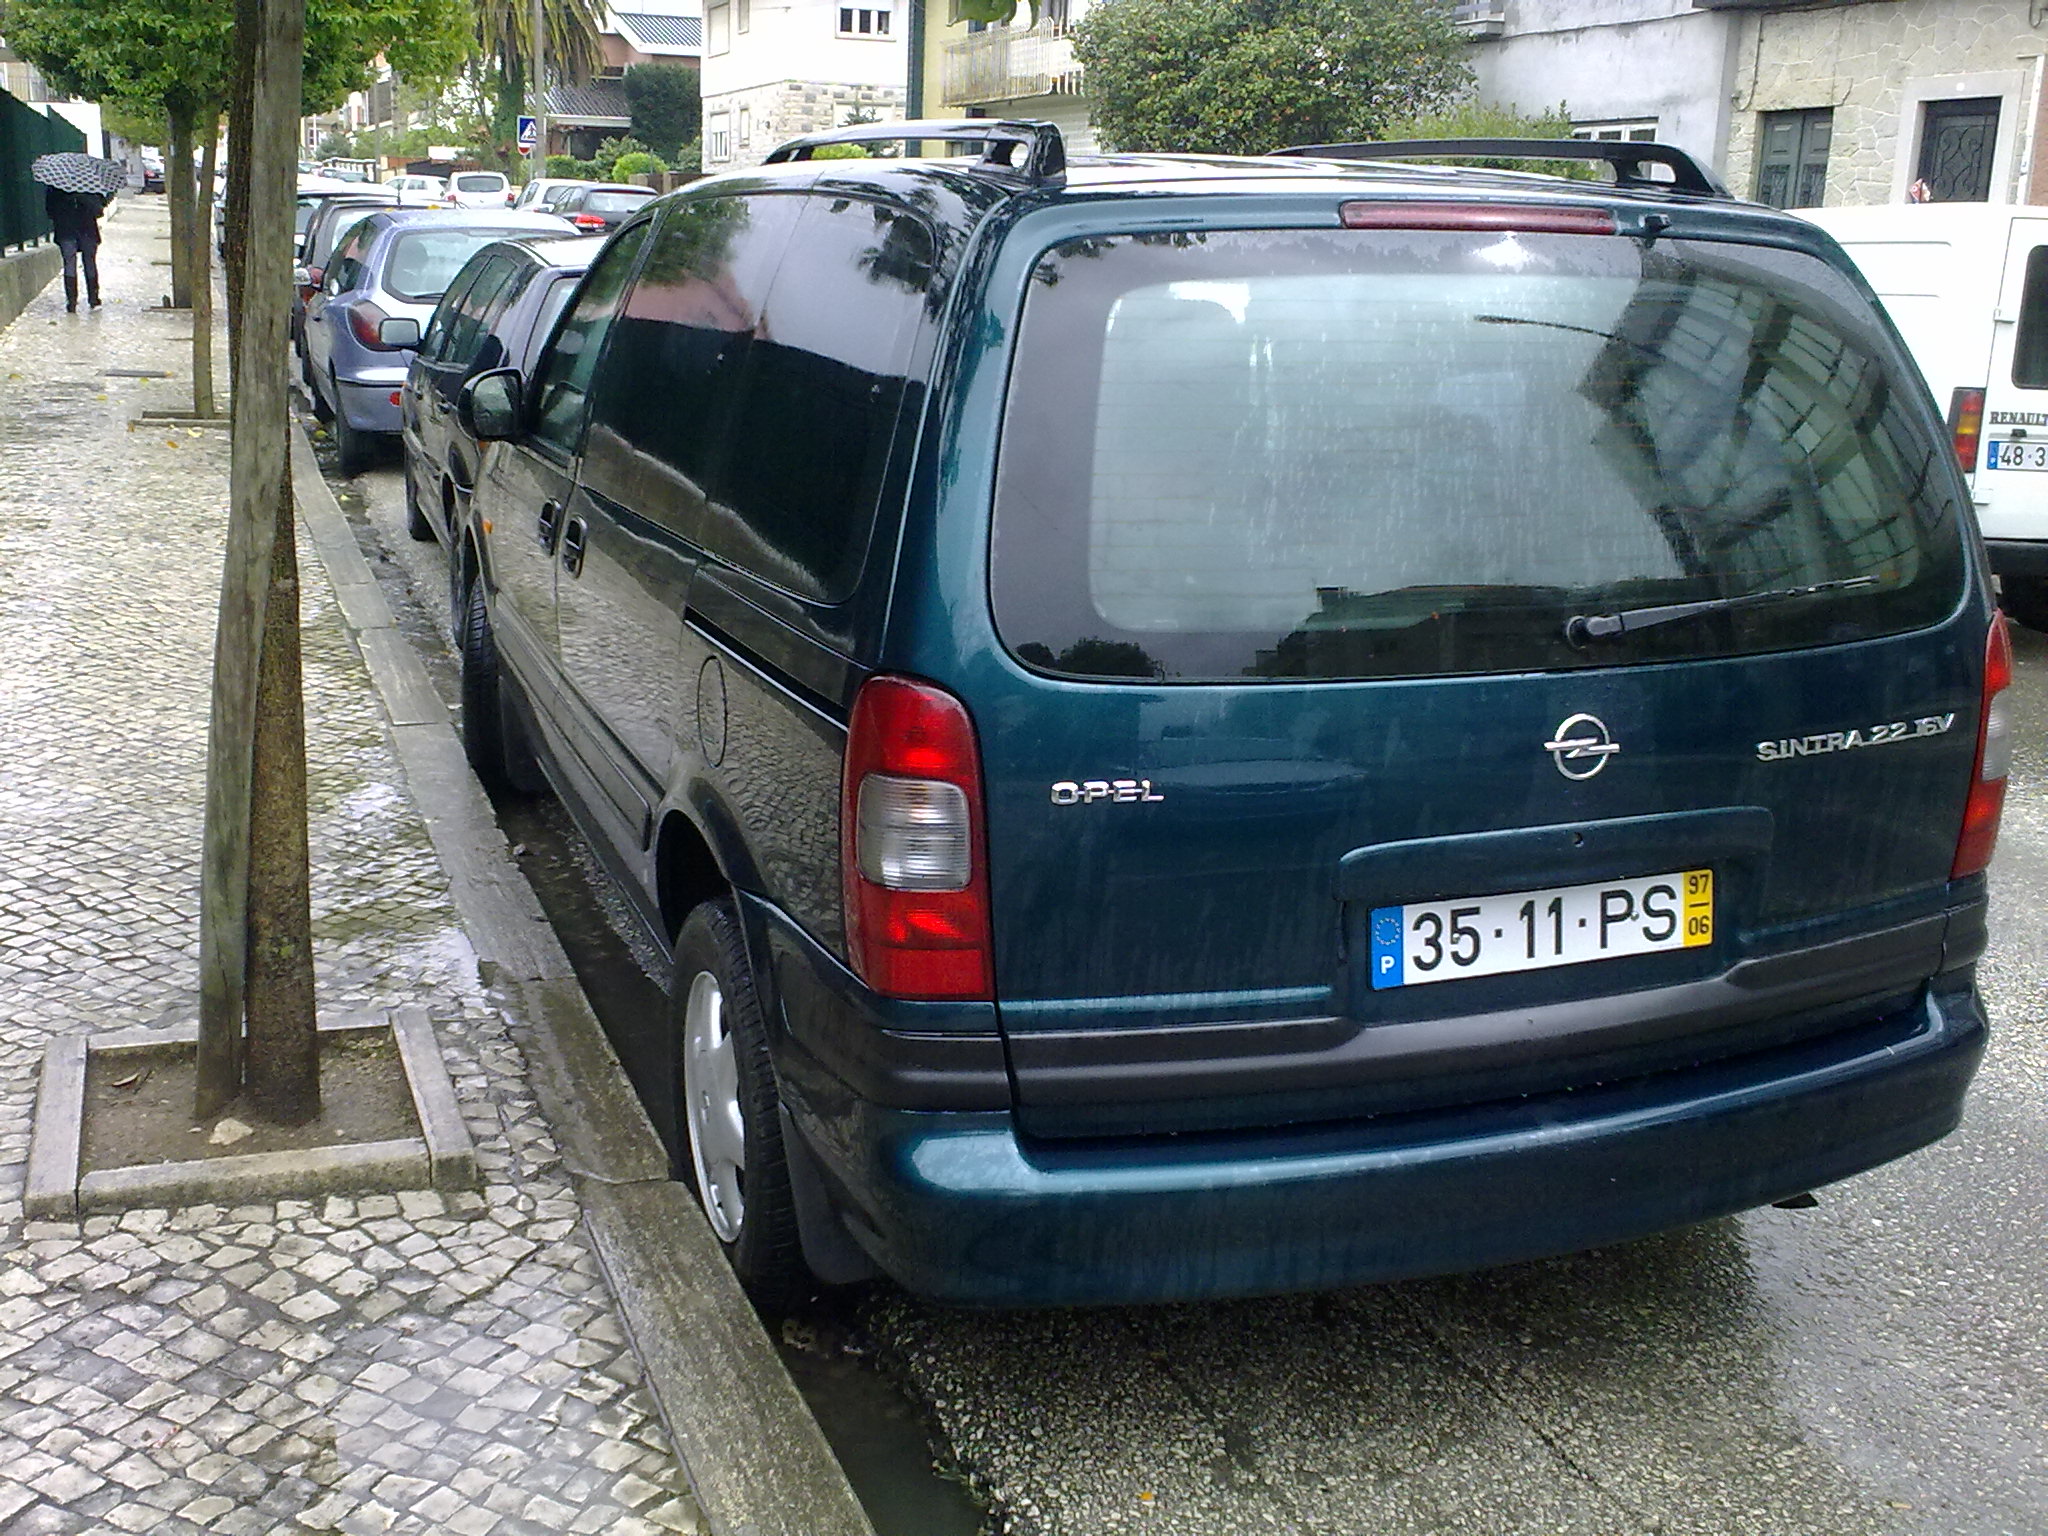 1997 Opel Sintra | Flickr - Photo Sharing!